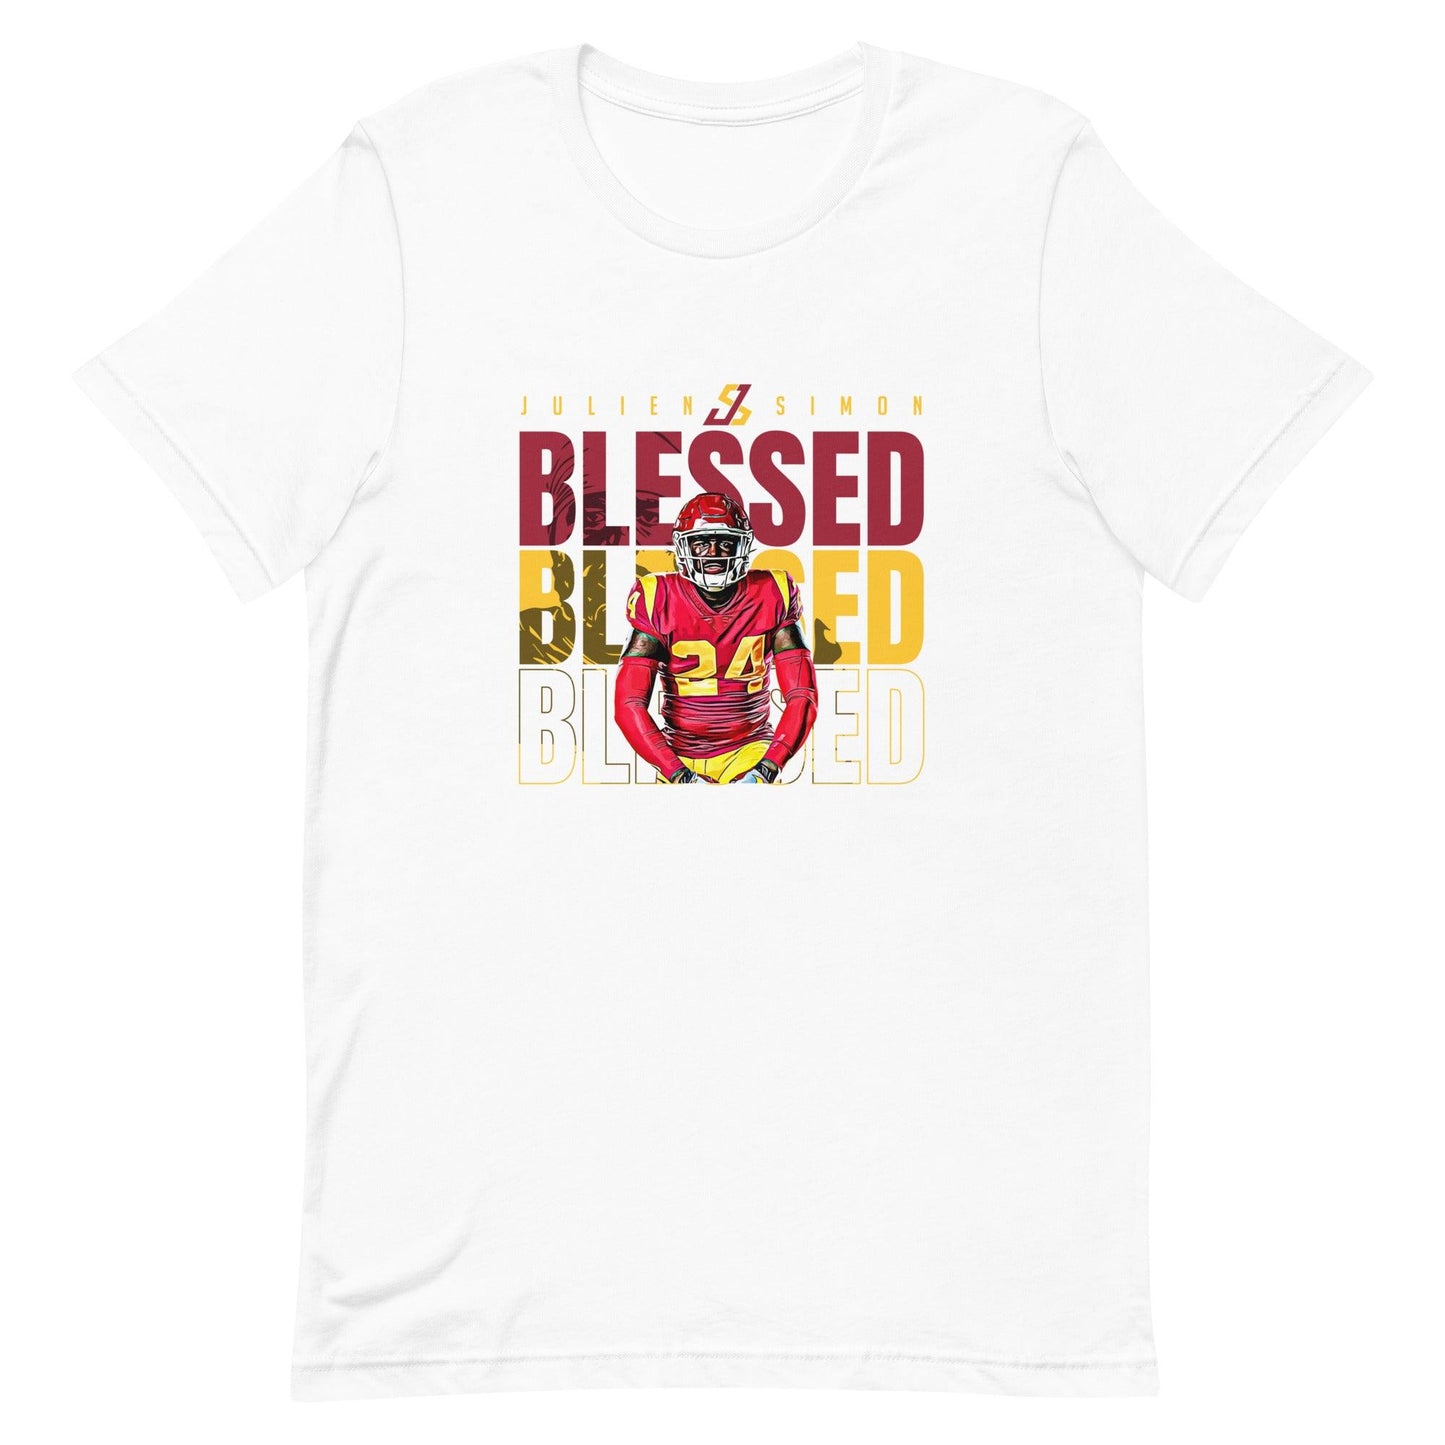 Julien Simon "Blessed" t-shirt - Fan Arch